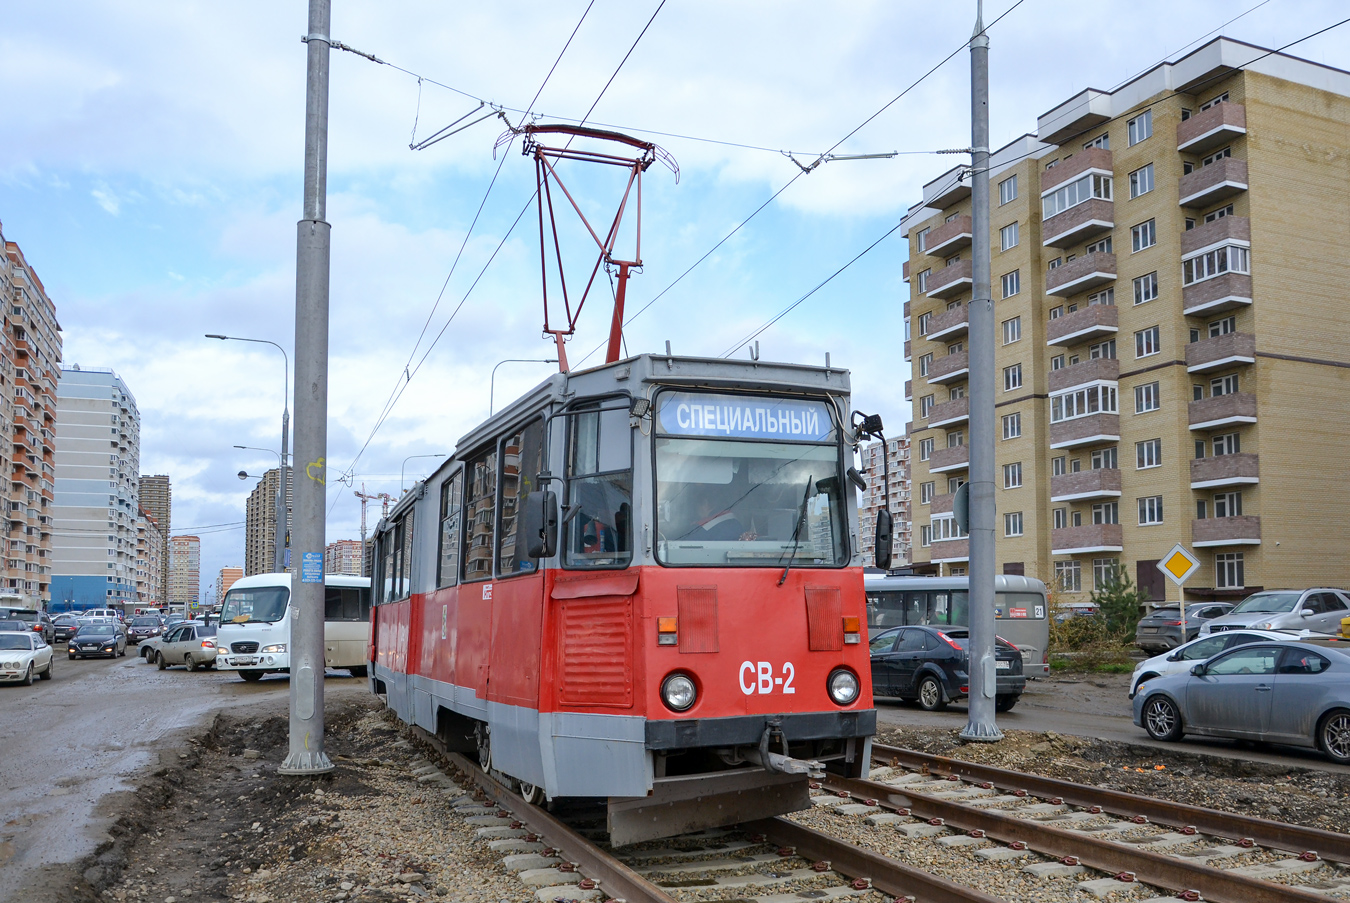 Краснодар, 71-605 (КТМ-5М3) № СВ-2; Краснодар — Строительство трамвайной линии по Московской улице